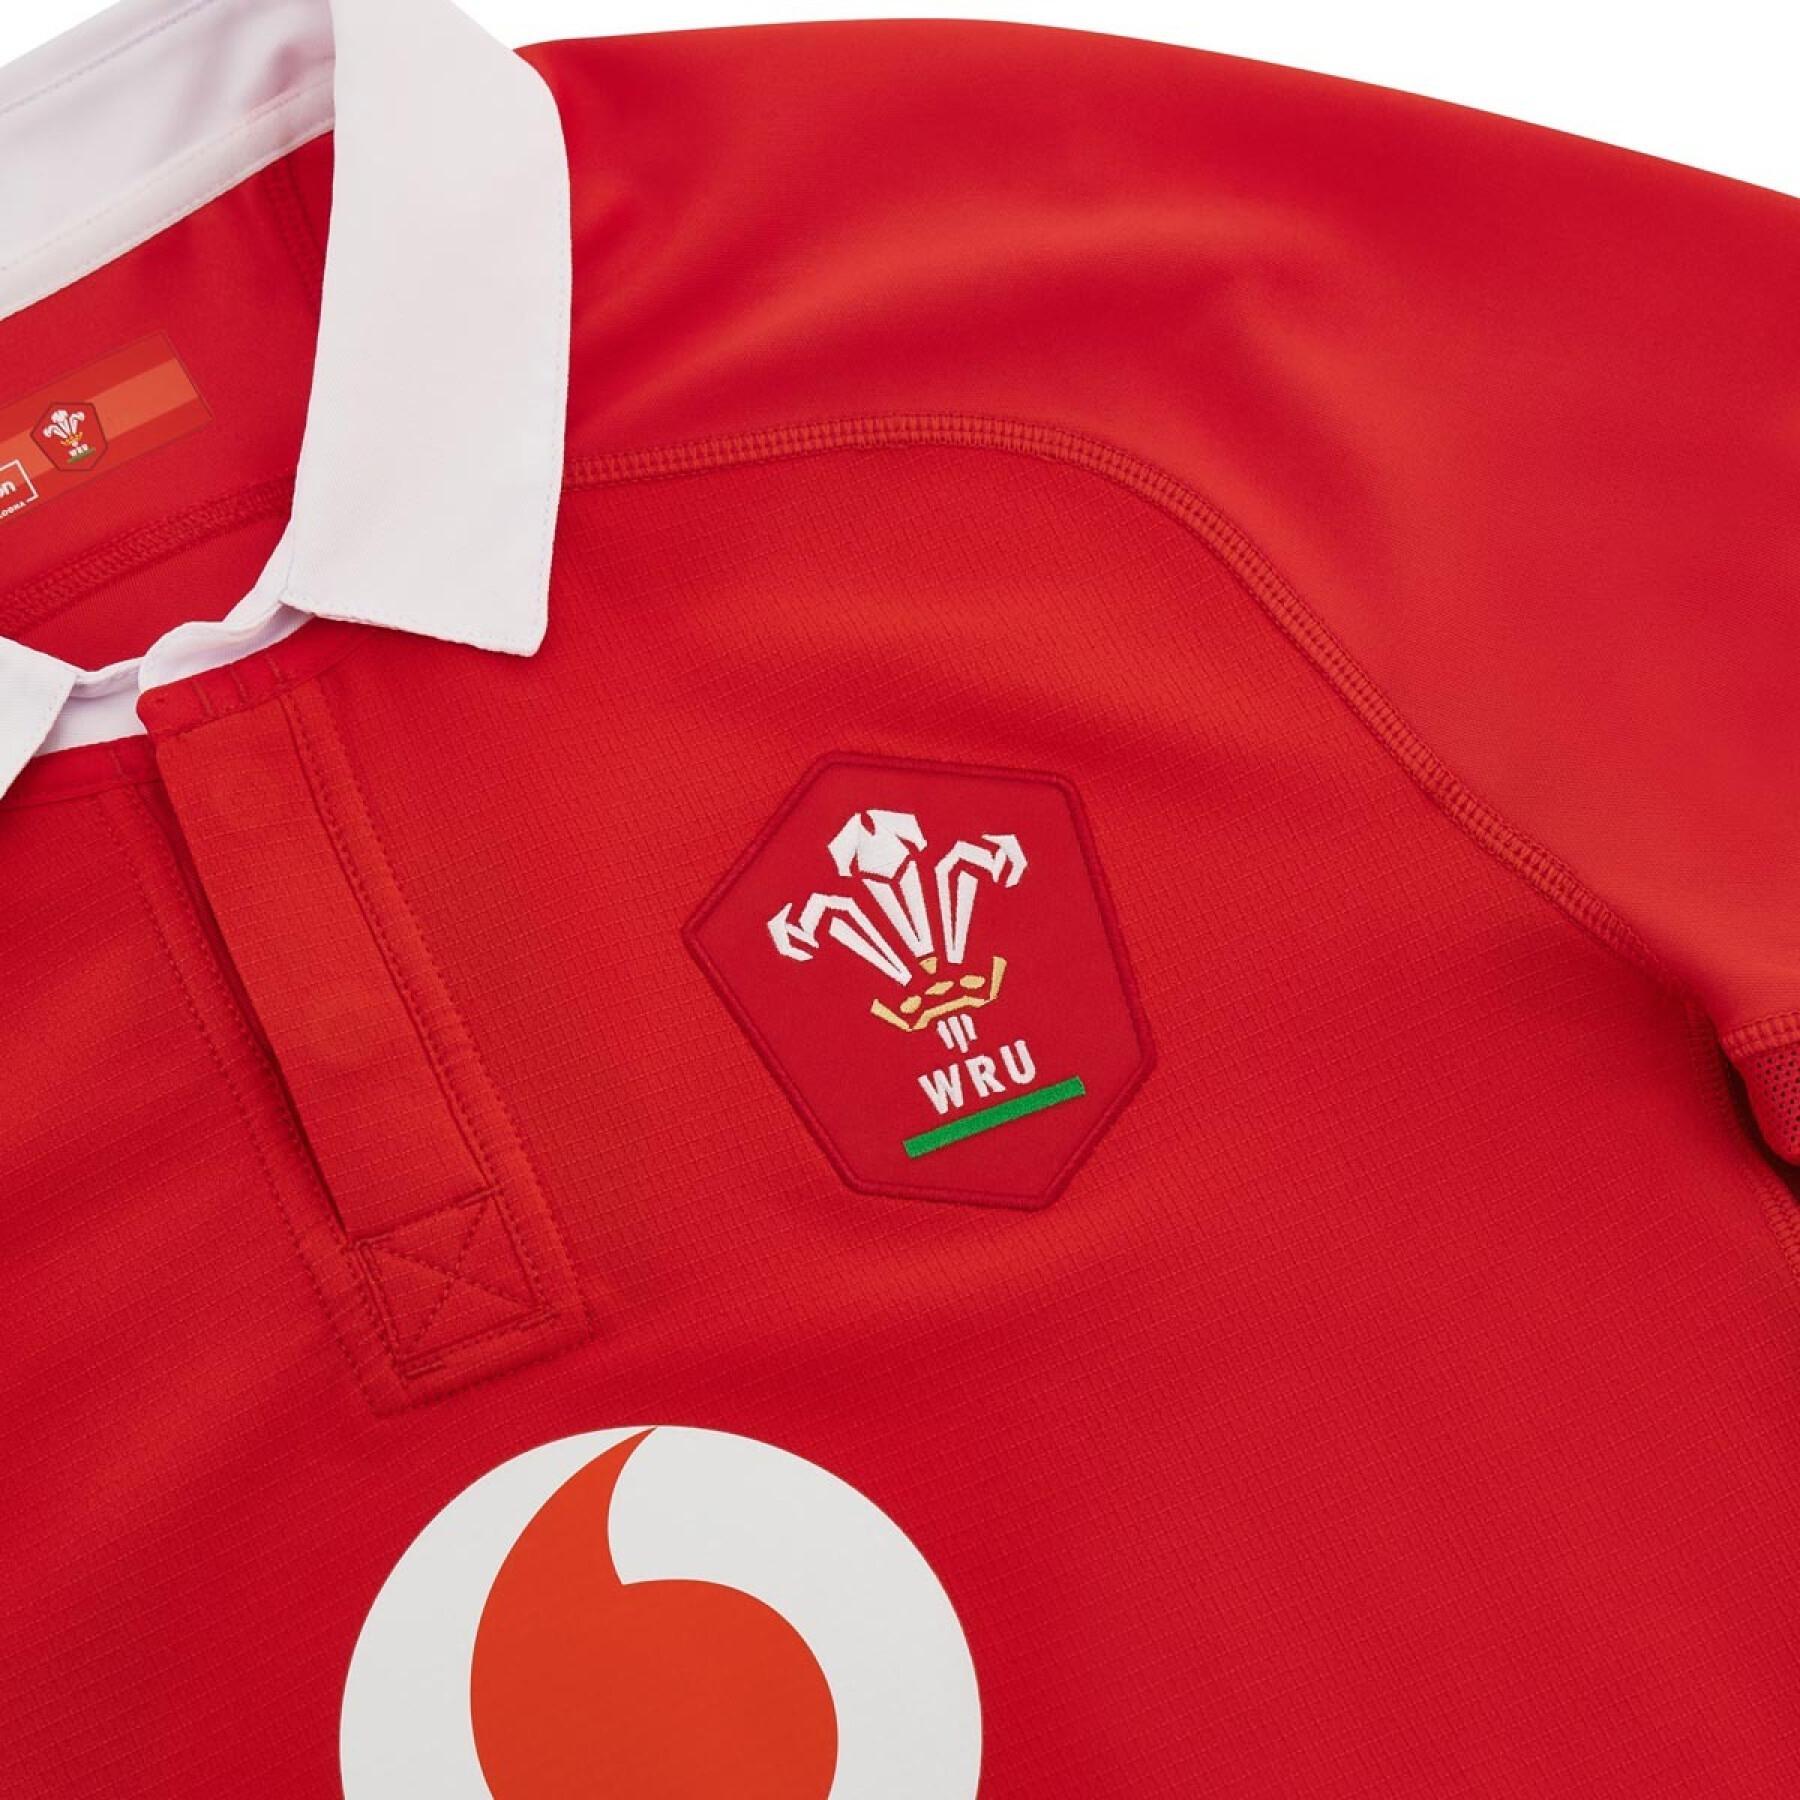 Authentic home jersey Pays de Galles 2023/24